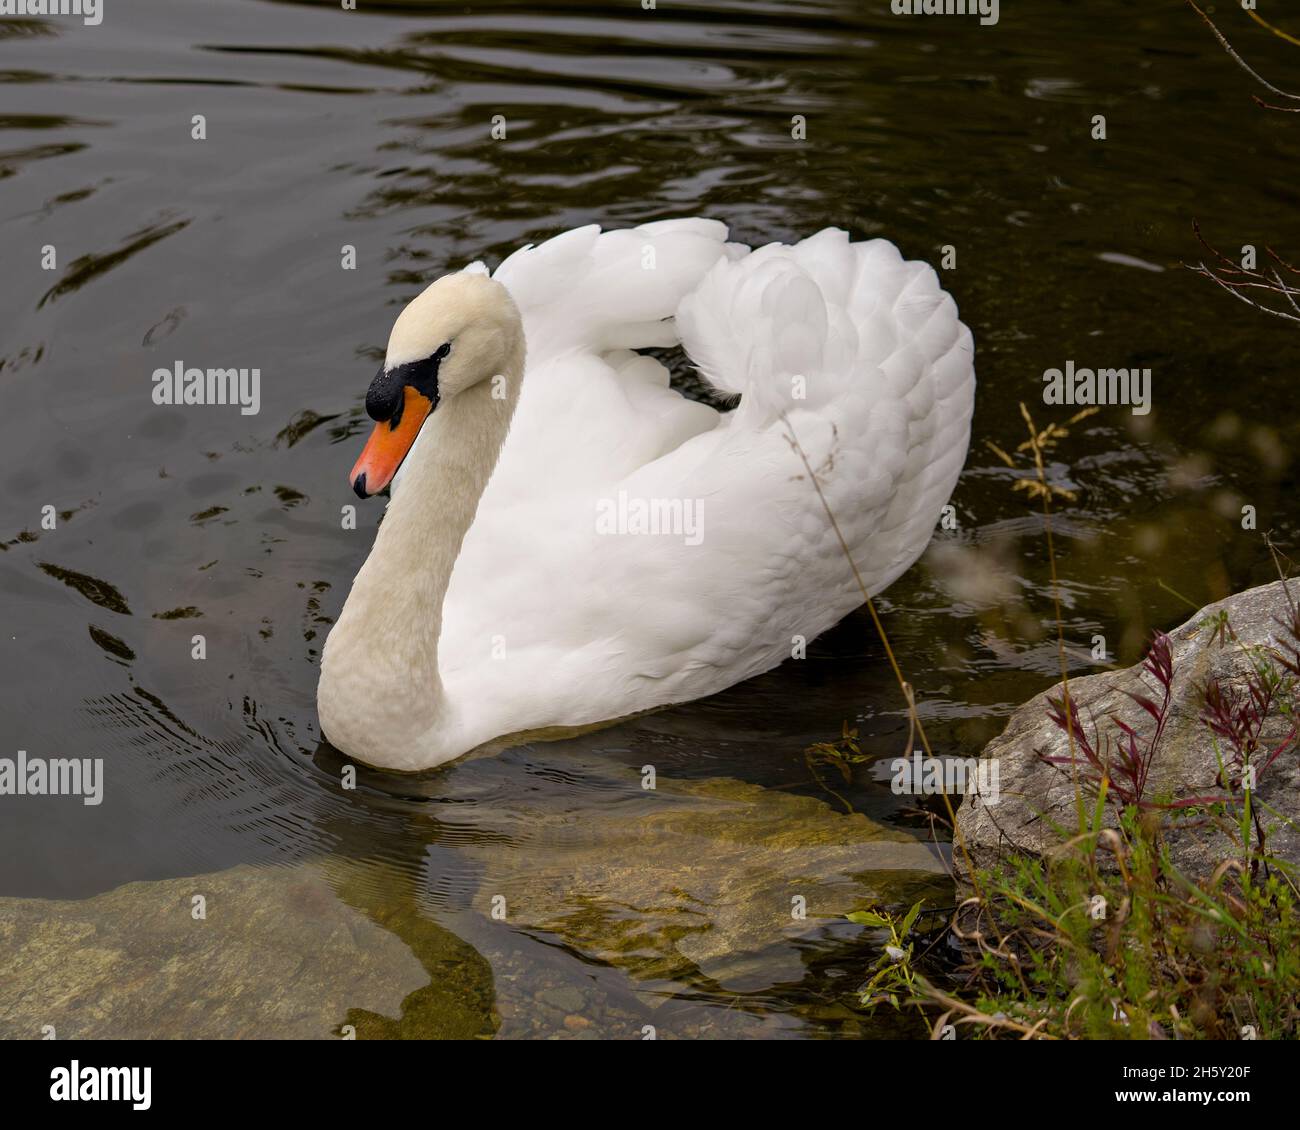 Swan Mute oiseau nageant avec des ailes blanches étendues avec fond d'eau dans son environnement et son habitat environnant.Portrait.Image. Banque D'Images